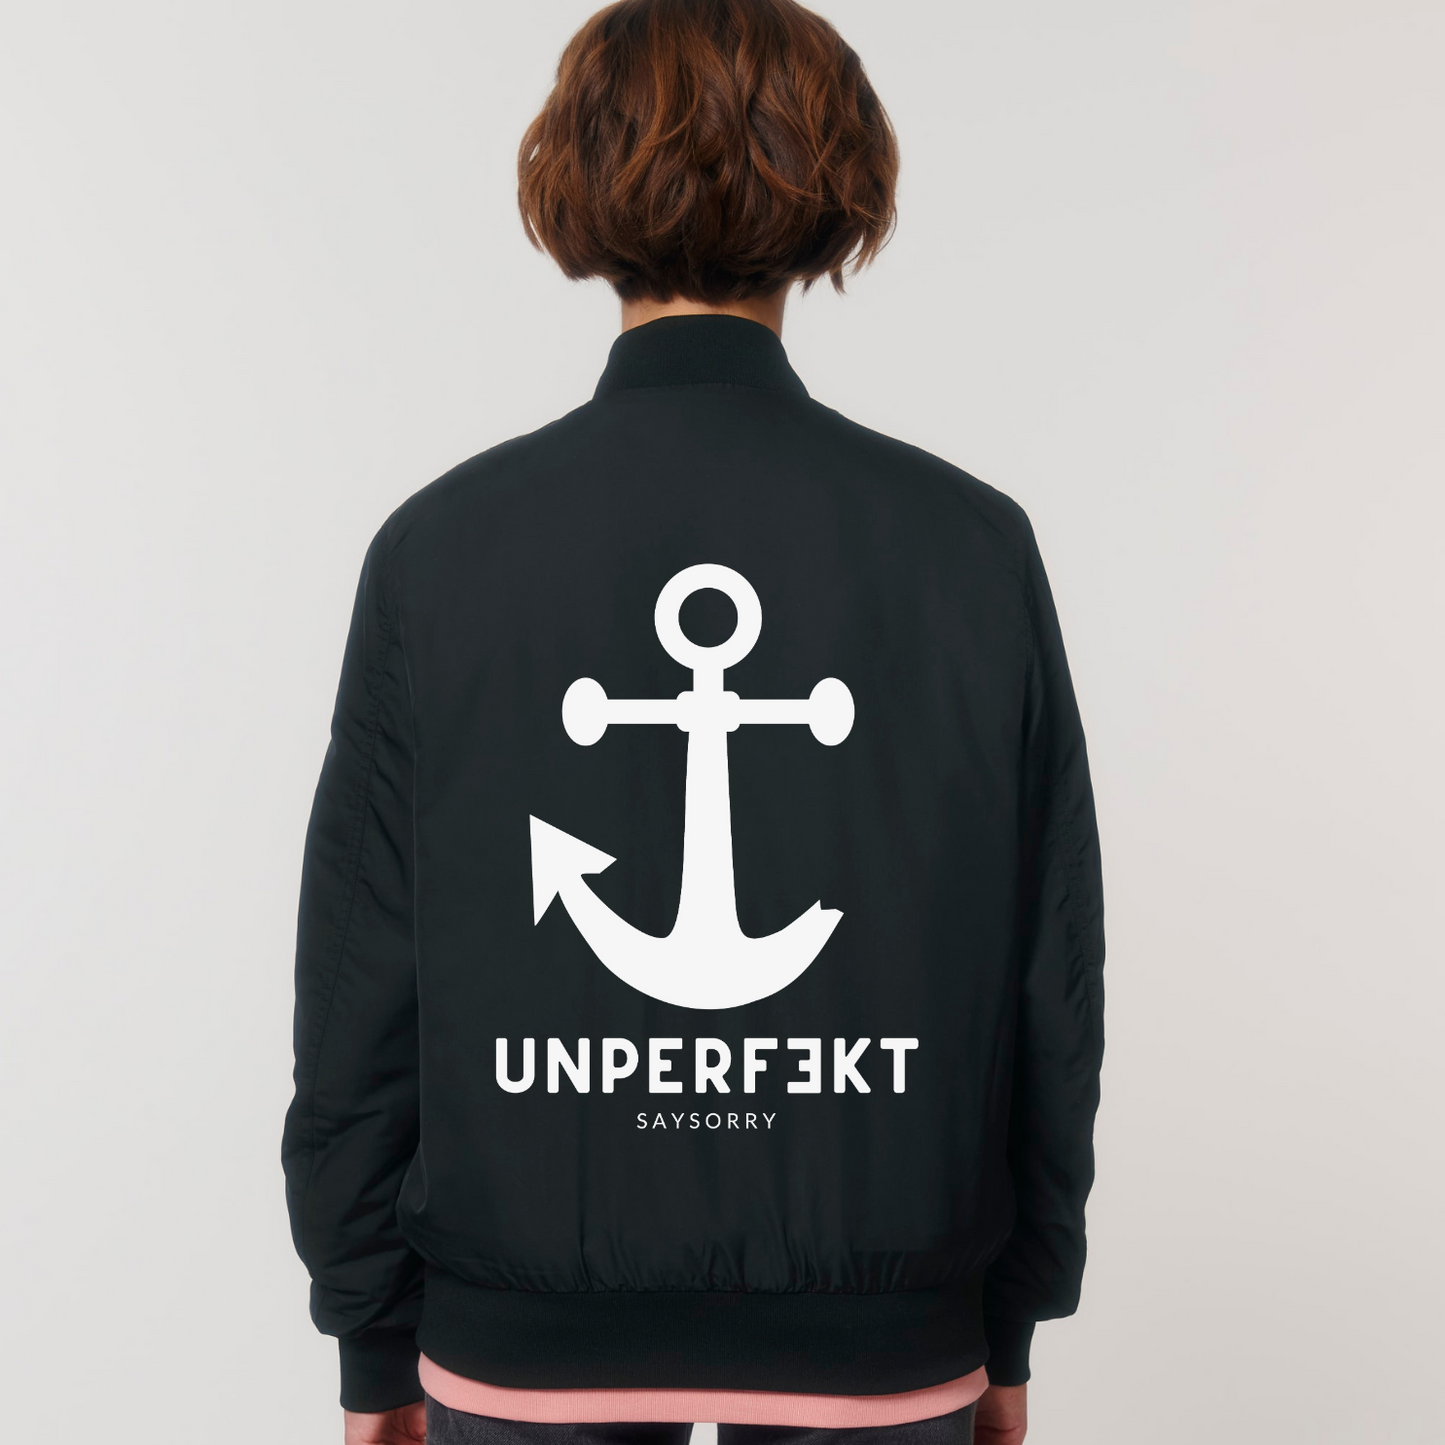 Unisex Jacke »Unperfekt mit Anker« hochwertig bestickt und bedruckt